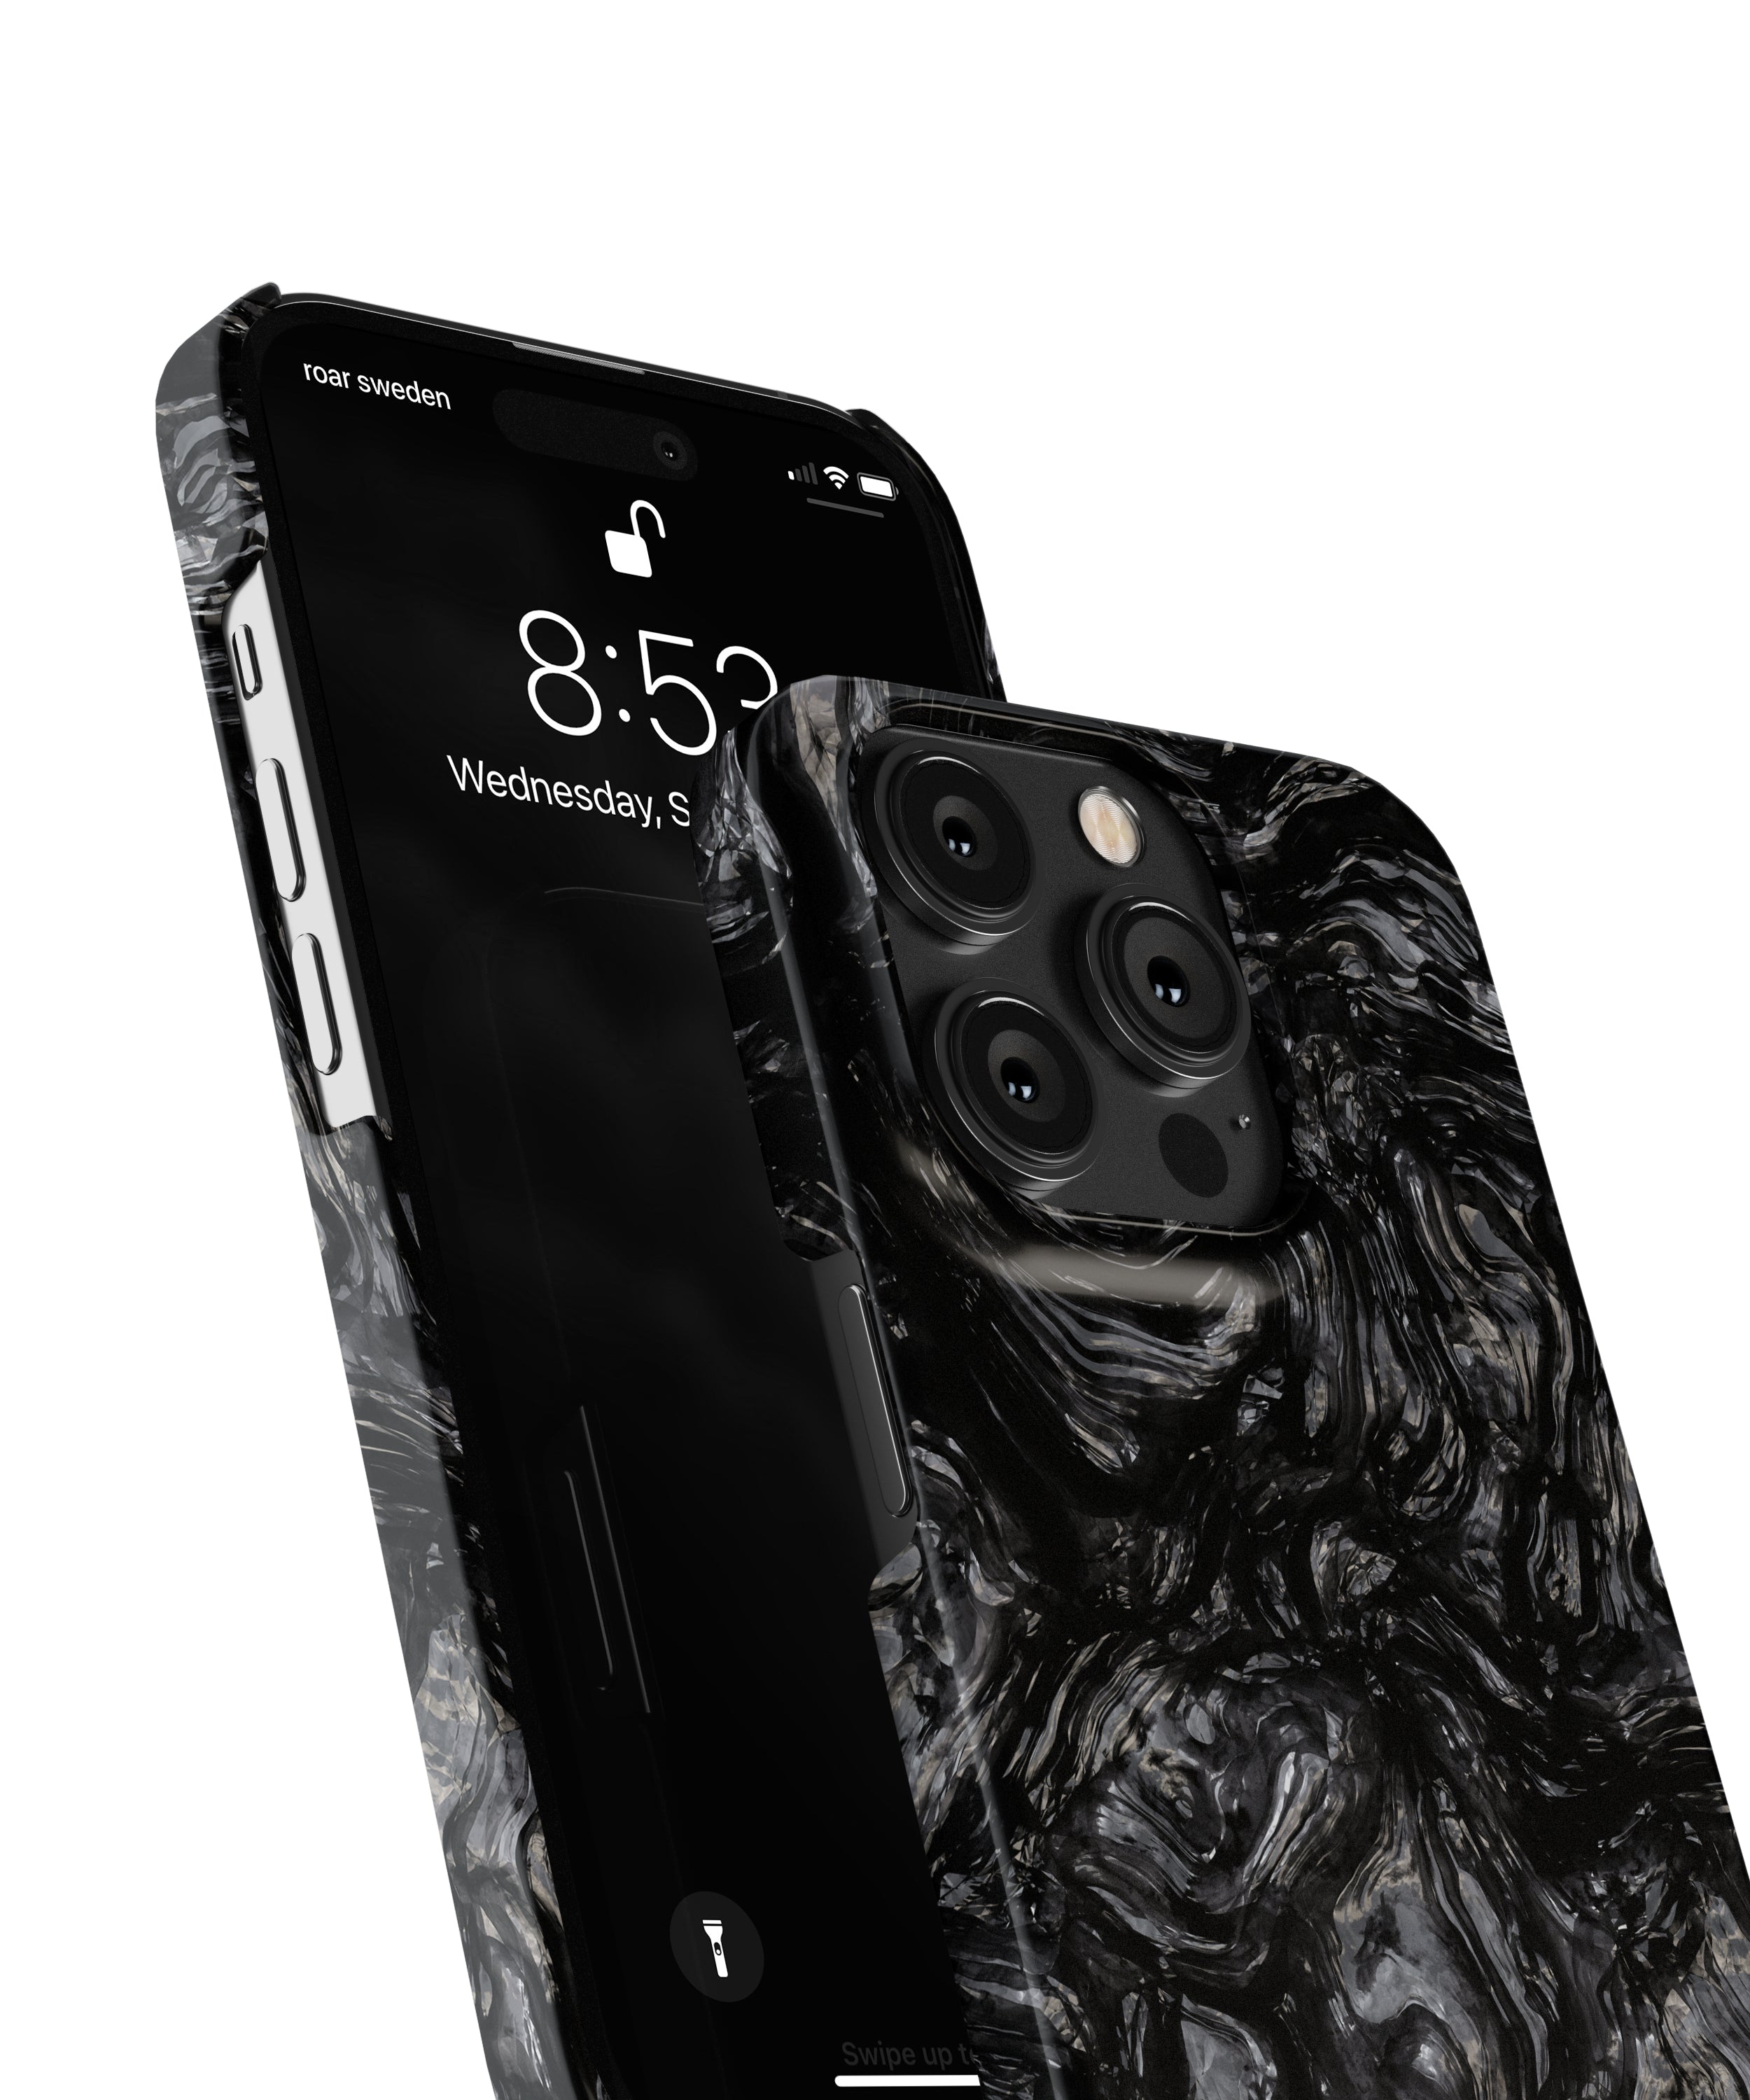 Förbättra och skydda din iPhone 11 Pro med vårt eleganta Lava Stone - Slim Case. Detta slitstarka fodral erbjuder en elegant svart marmordesign samtidigt som det ger en hållbar och pålitlig sköld för din enhet.